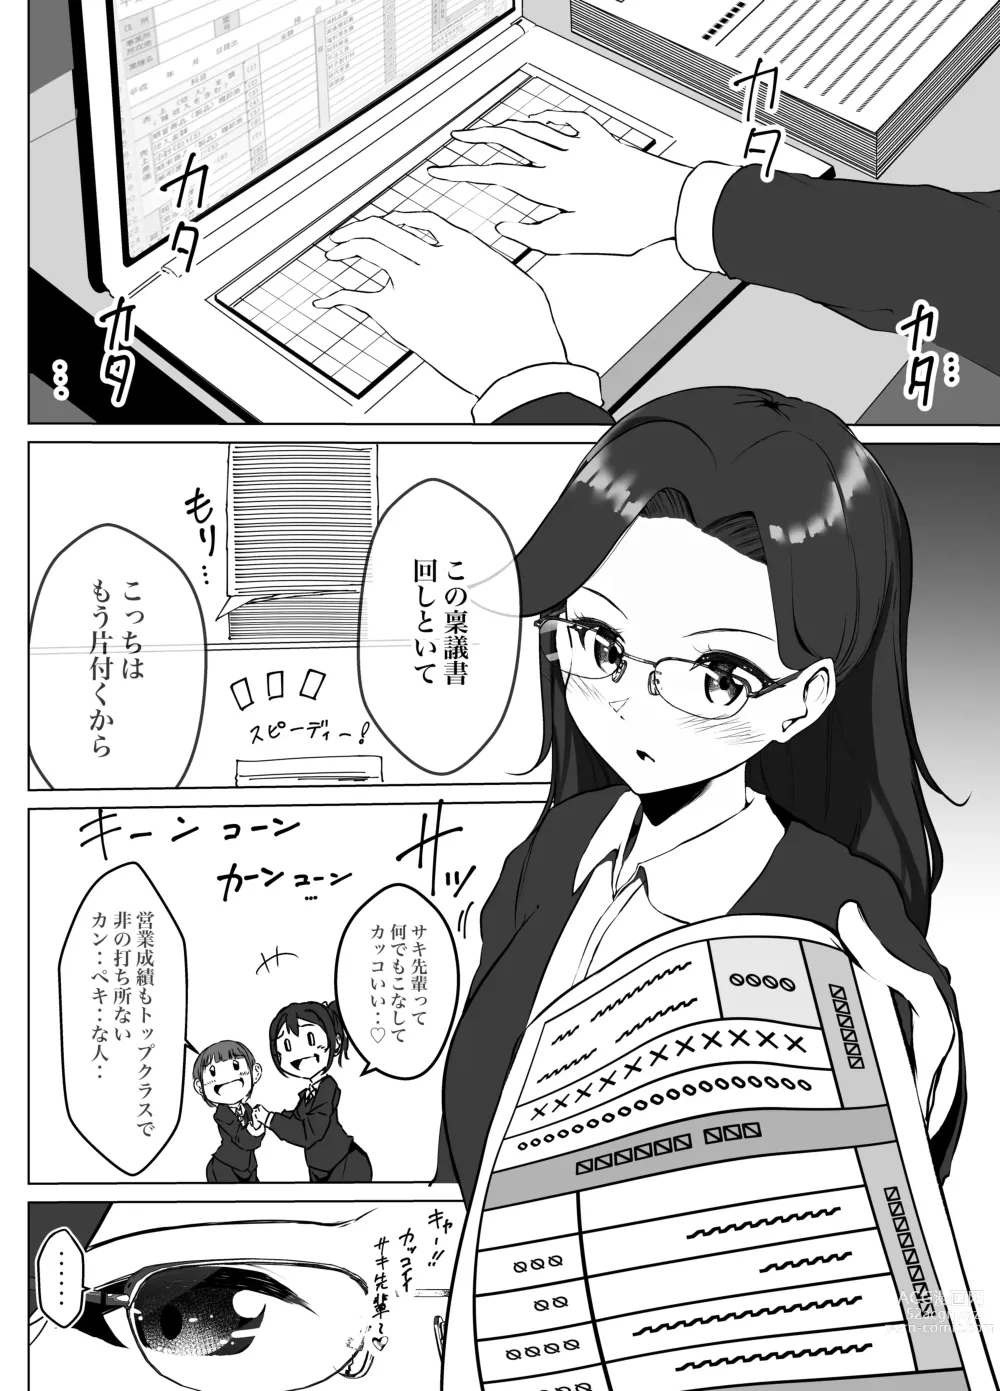 Page 6 of doujinshi Karitai Kanojo  to Kieta Kimi